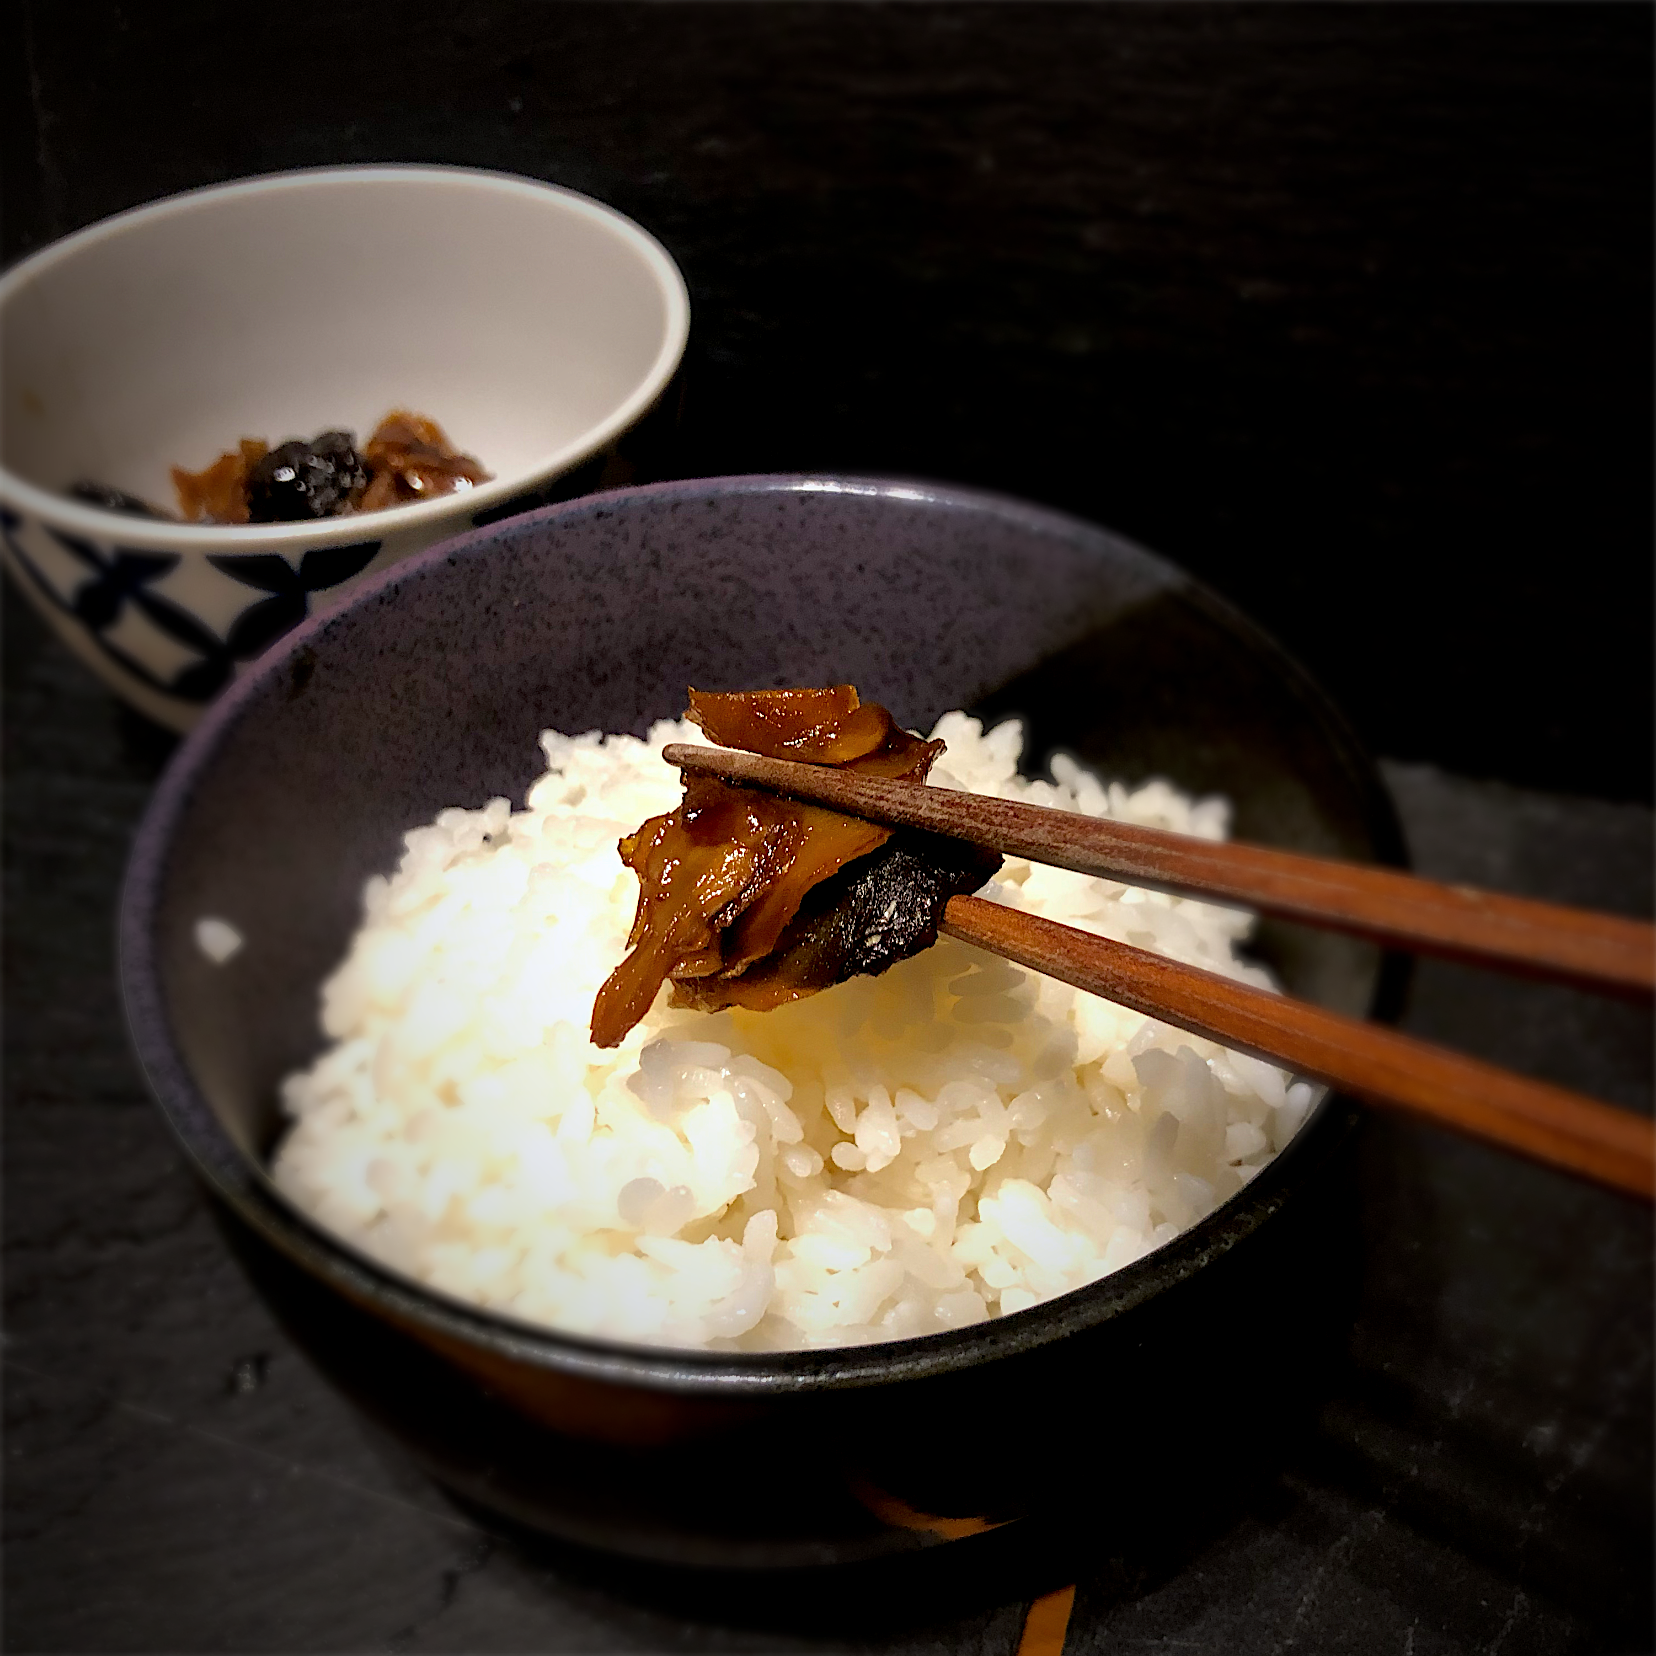 佐野未起の料理 幻の地場名産品 椎茸と生姜の佃煮 大人味の佃煮